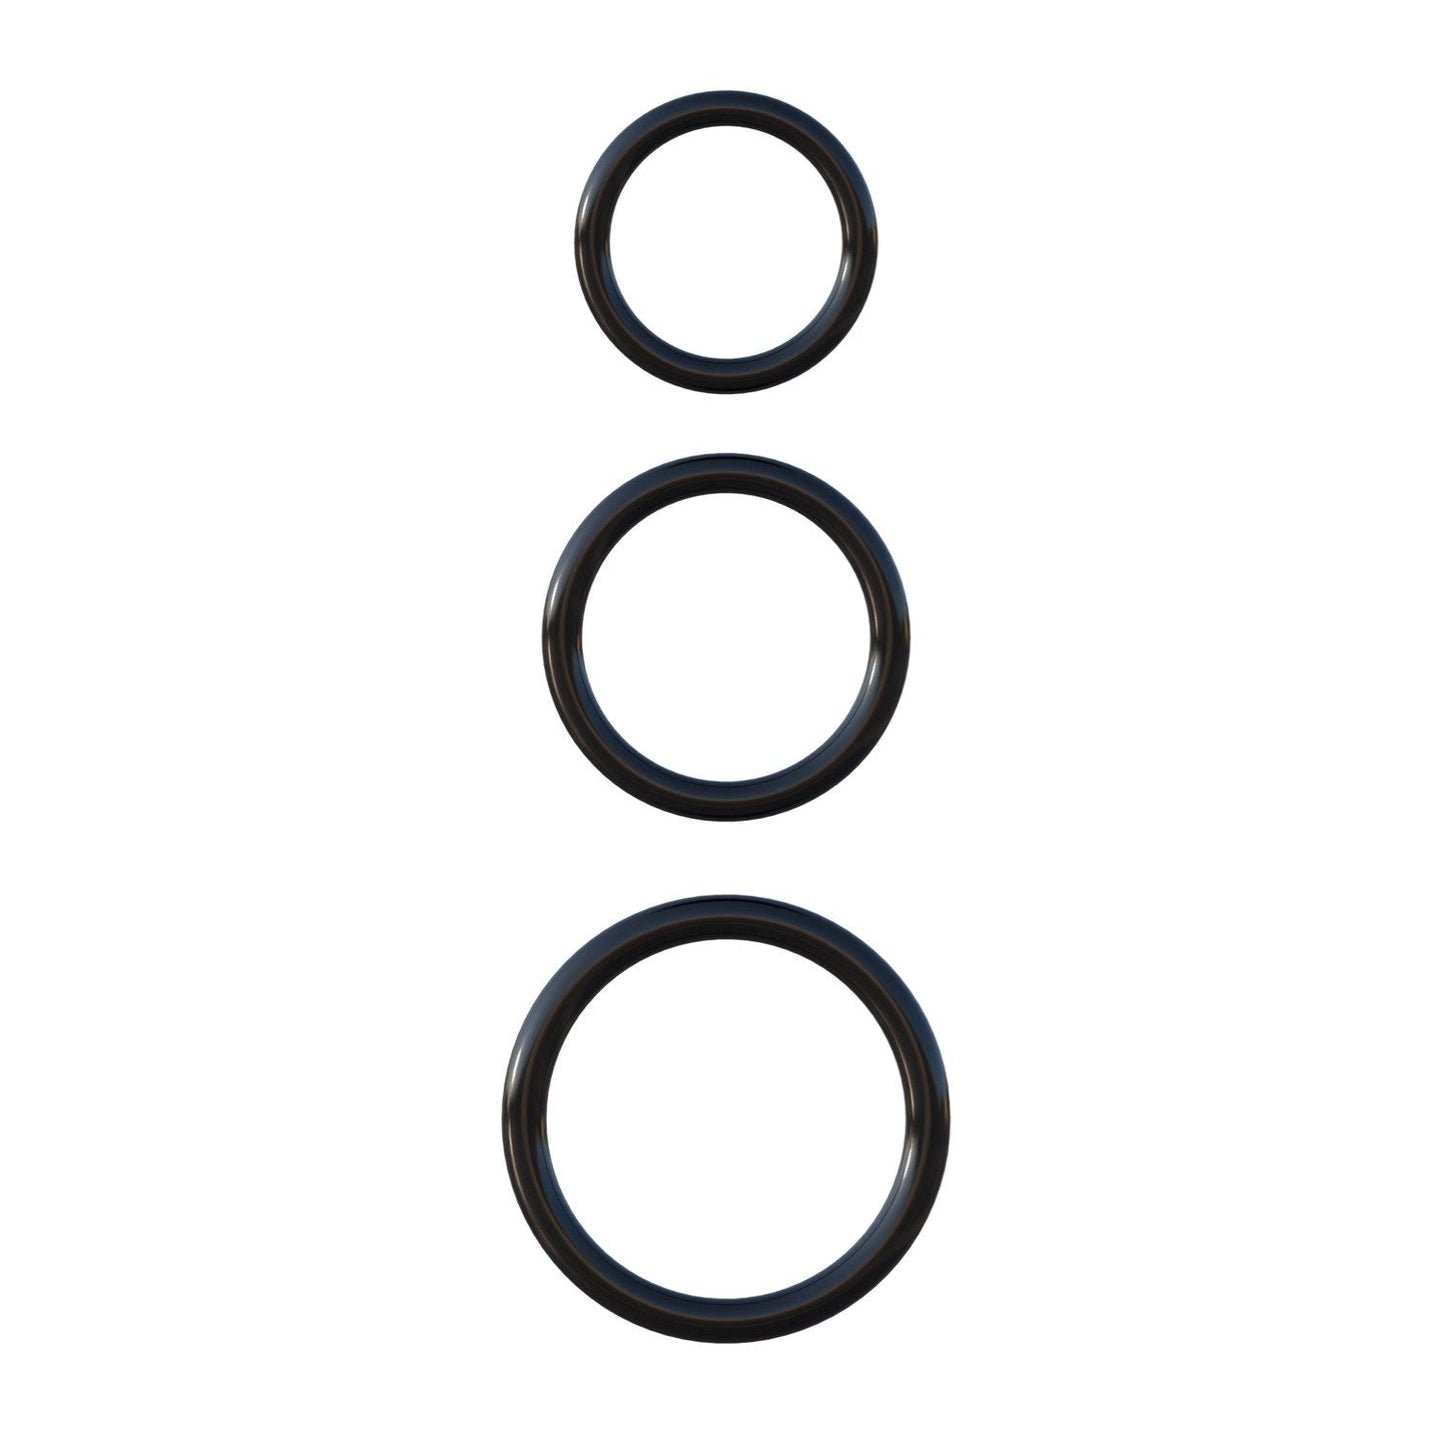 硅胶 3 环耐力套装 - 黑色阴茎环 - 3 件套